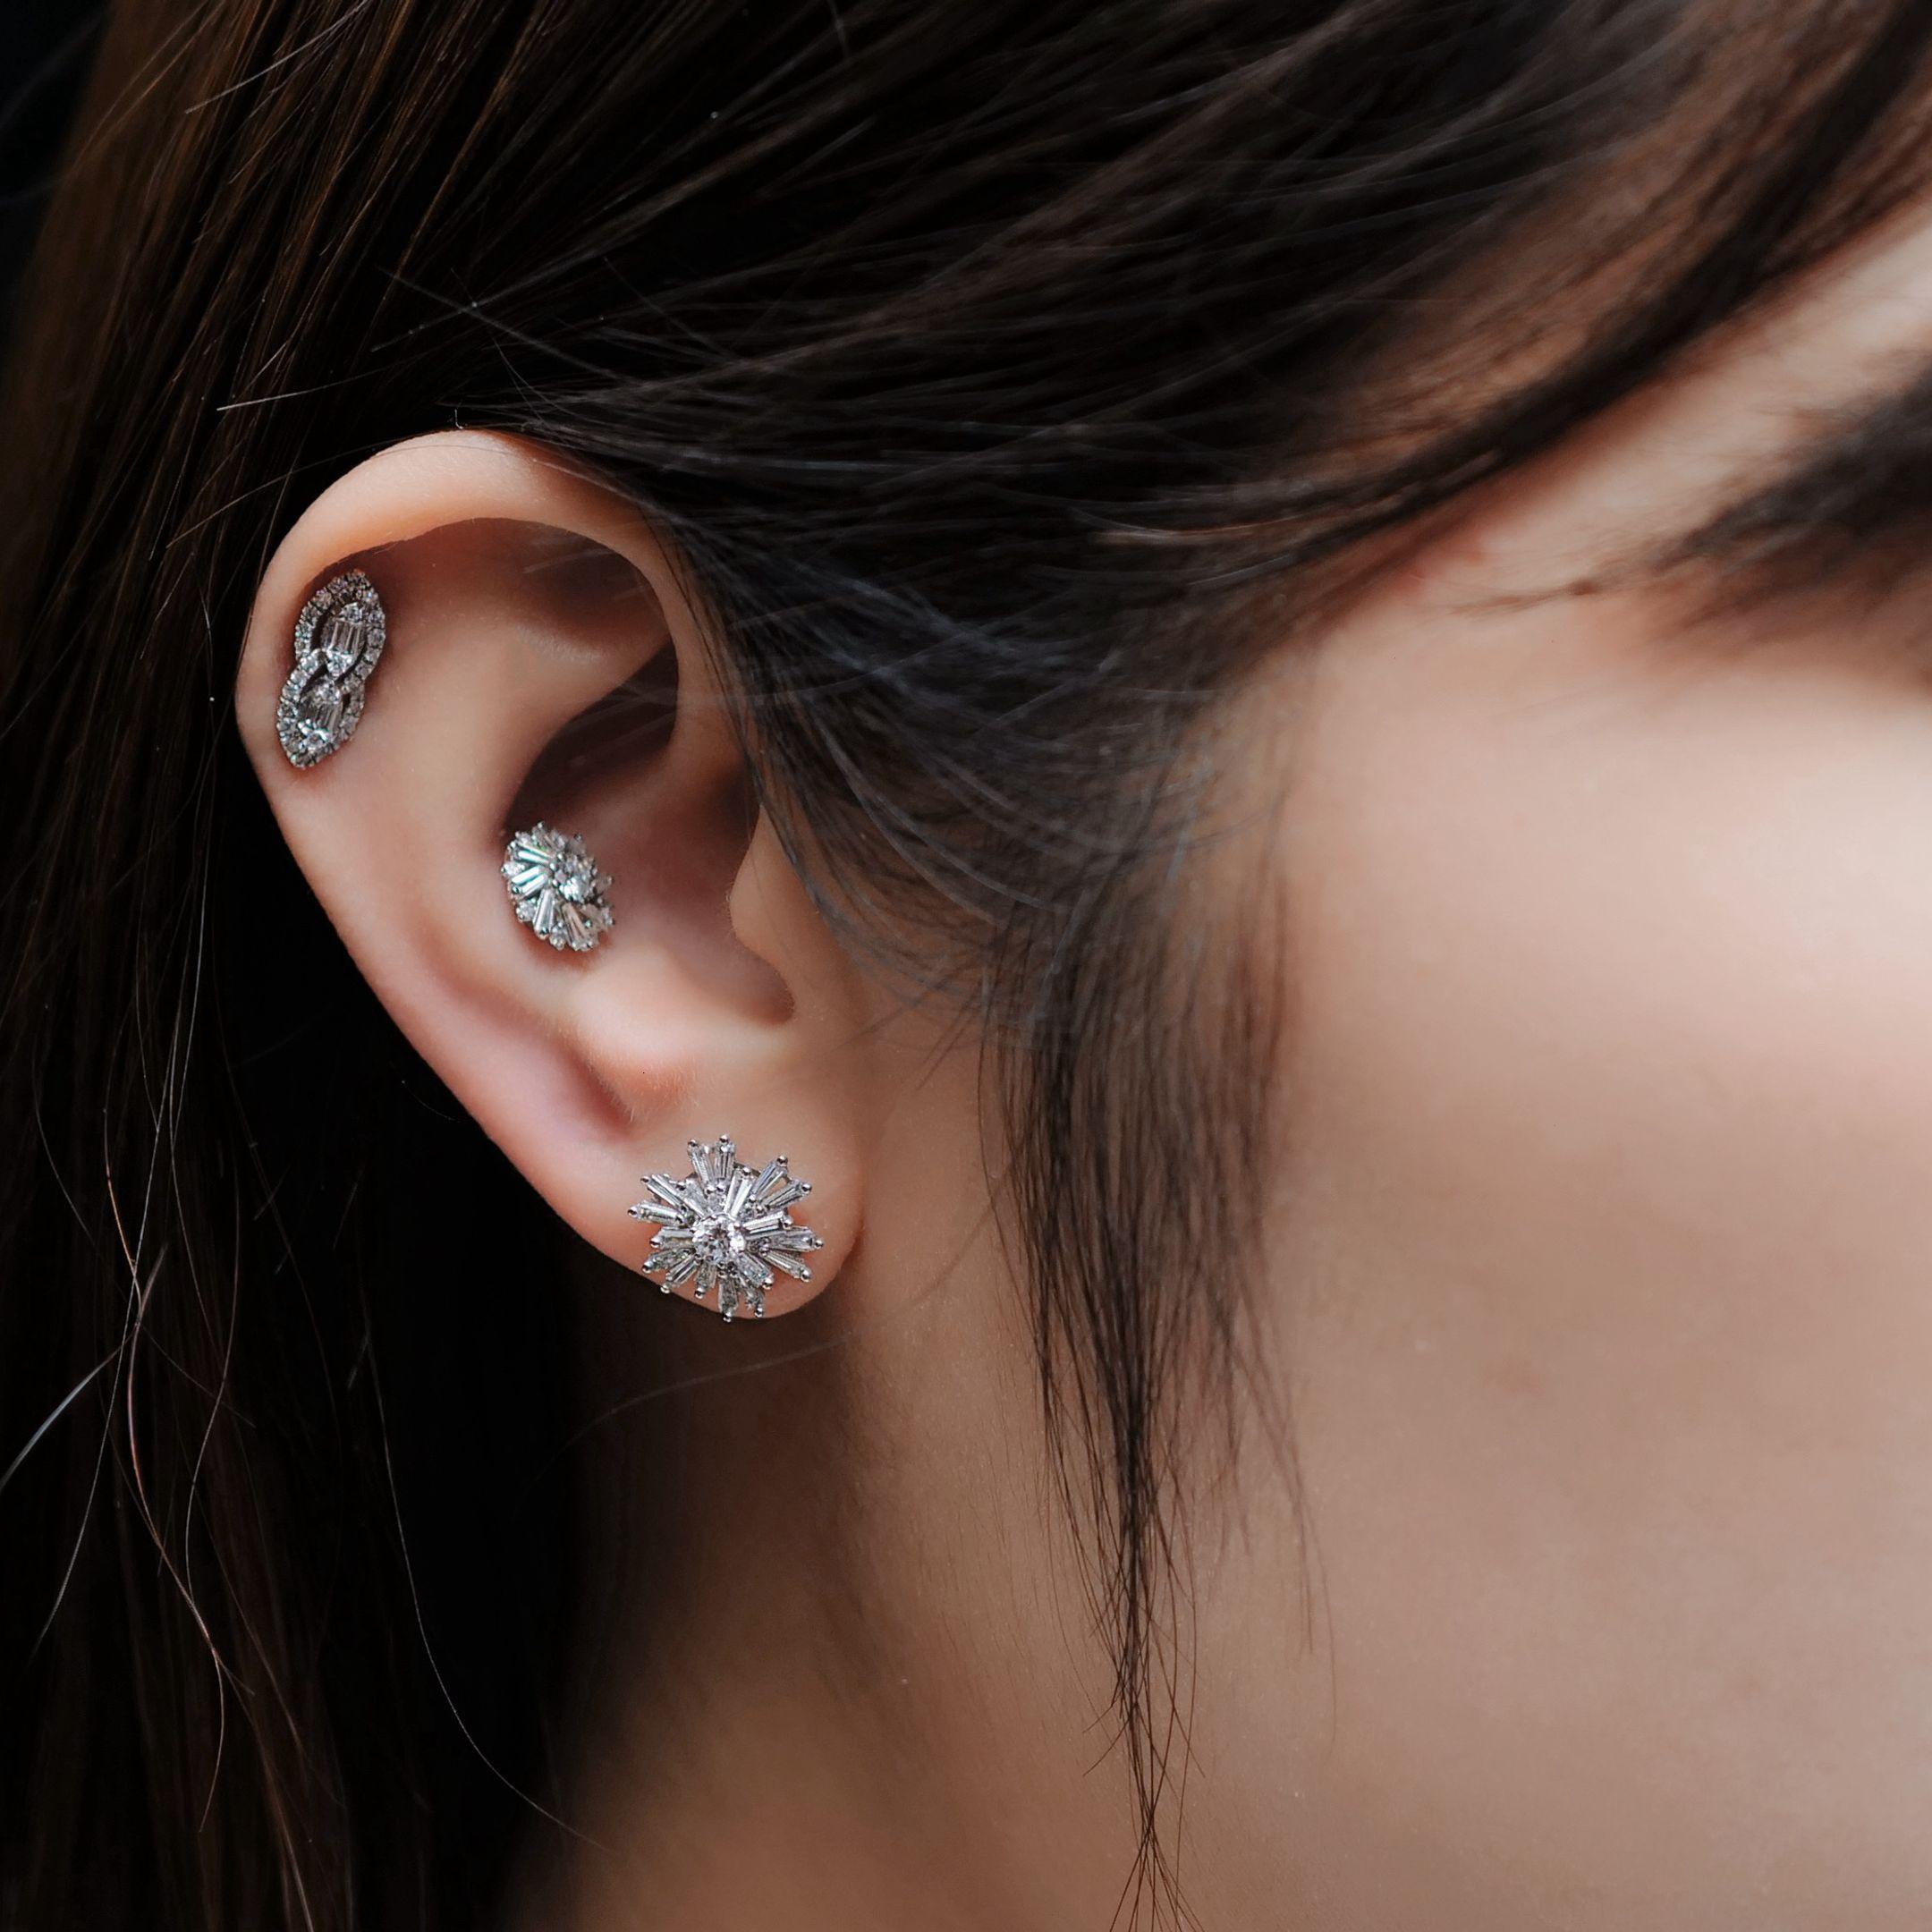 Diamant-Sternschnuppen-Ohrringe  1.756g 18K Weißgold  1,22 Karat Diamant

Diese diamantenen Starburst-Ohrringe strahlen Glanz und Raffinesse aus und sind ein wahres Wunderwerk. Die aus 18 Karat Weißgold gefertigten Ohrringe sind mit einem